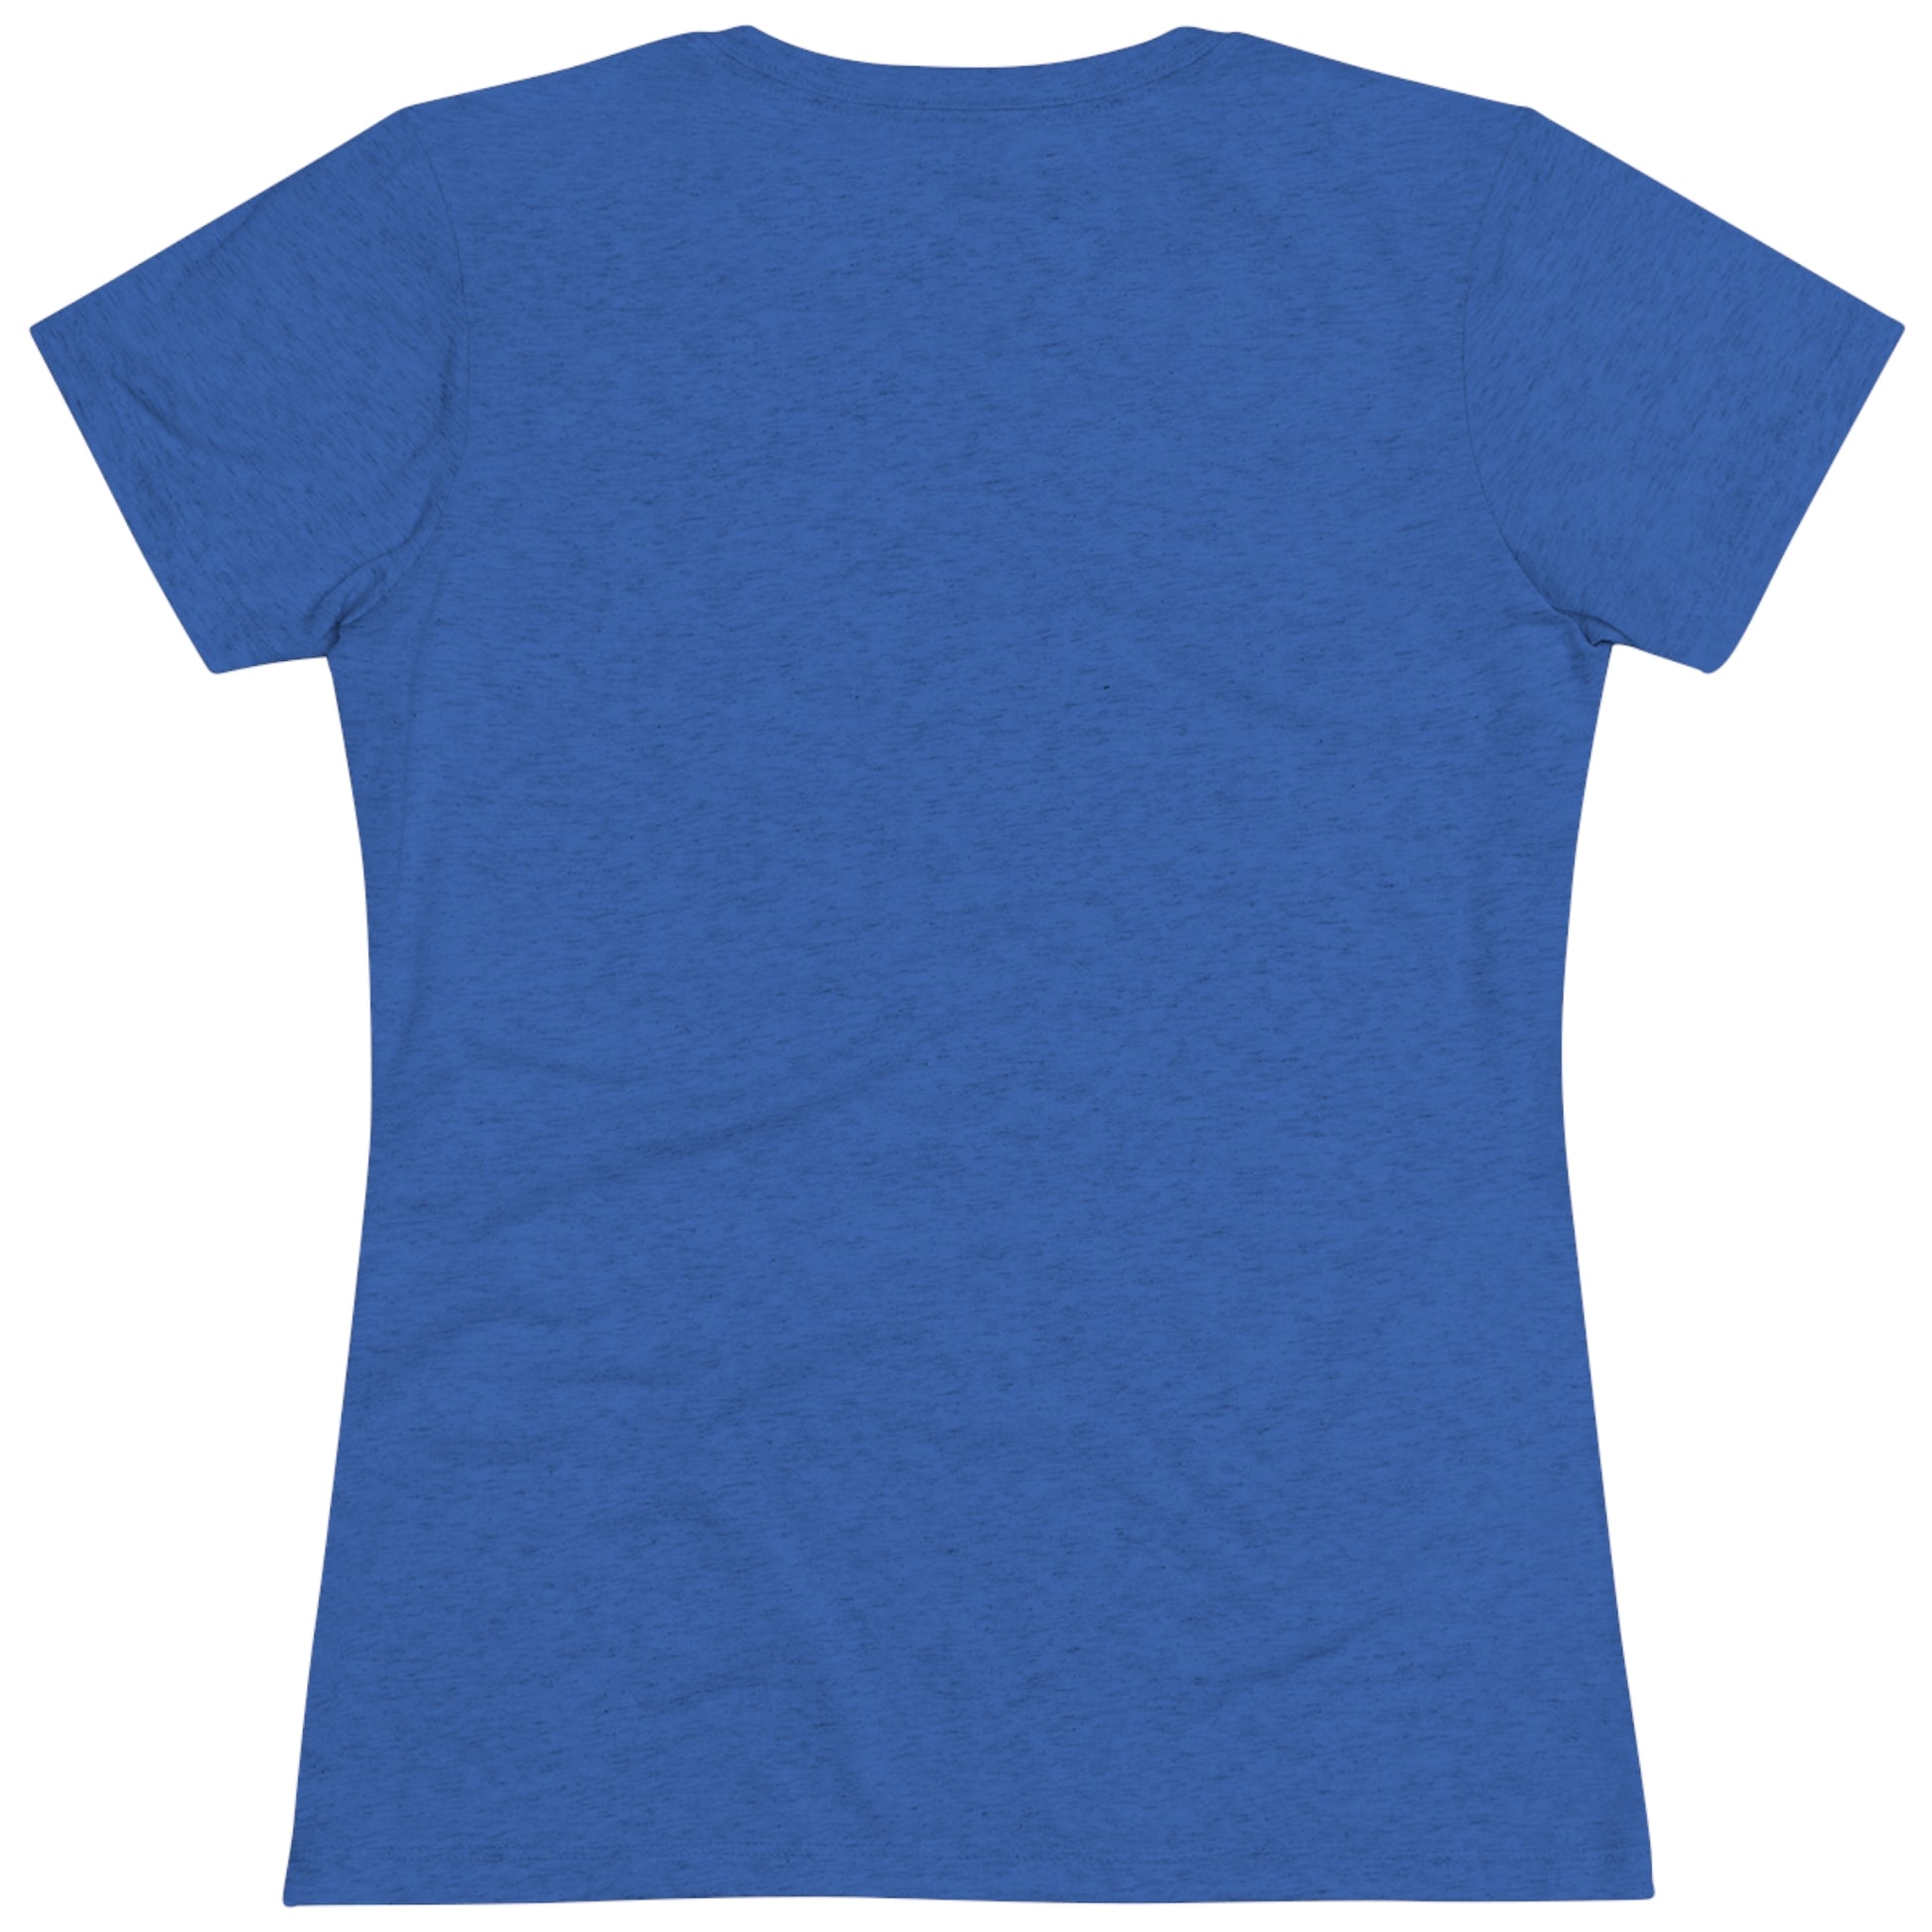 Women's "Casseroll" T-Shirt - Utah.com